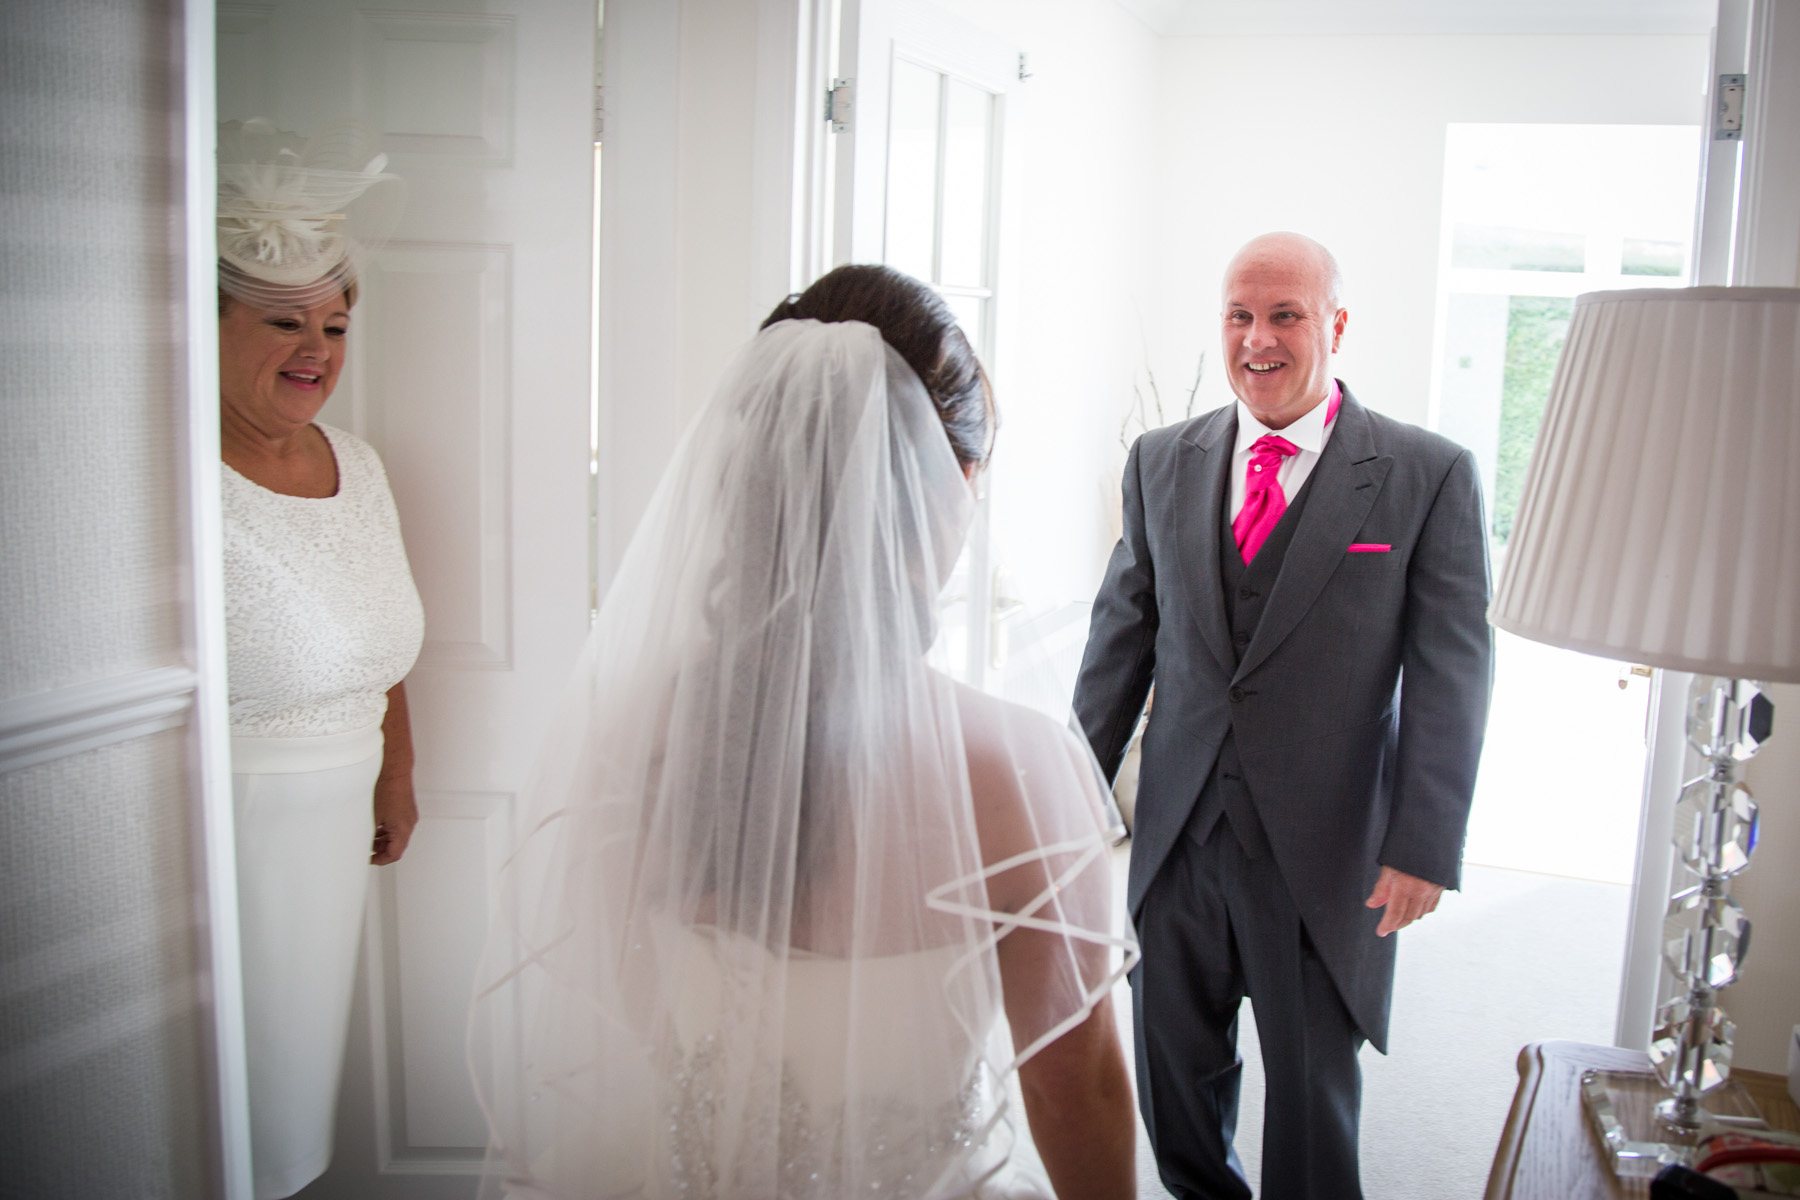 Mum and Dad looking at bride